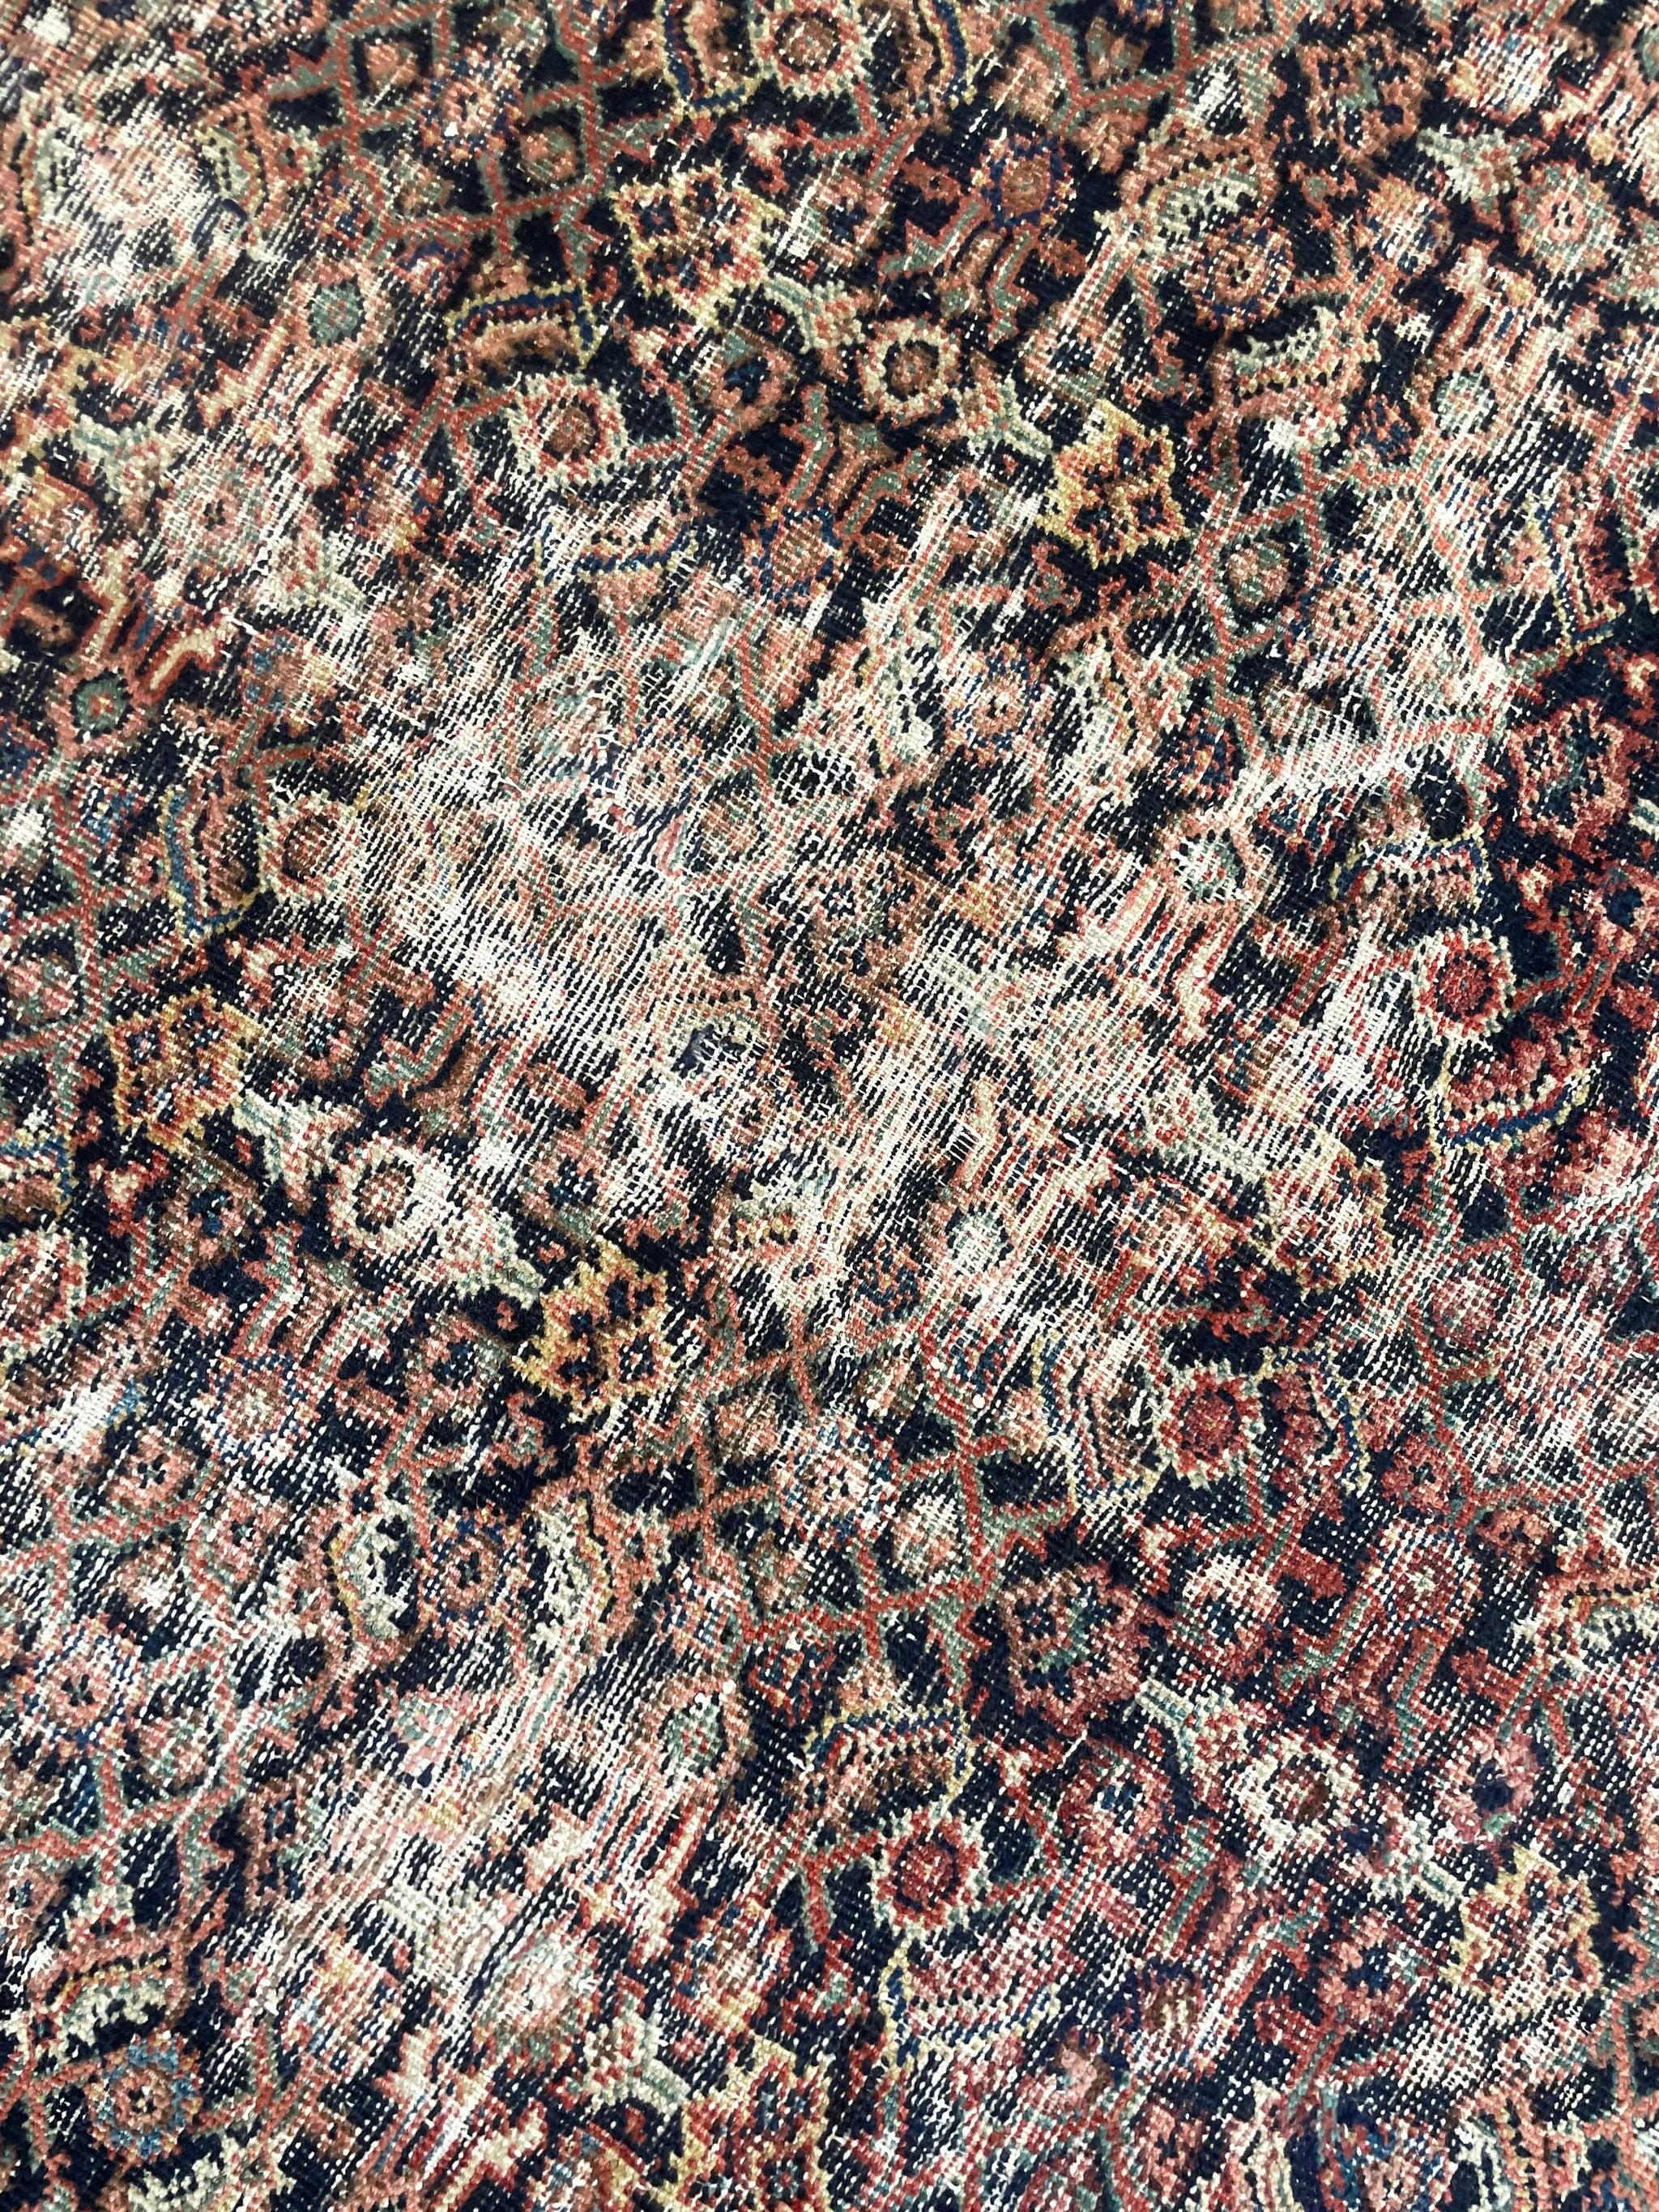 Antique Persian Carpet Rug in Deep Old-World Indigo, circa 1900-1915's For Sale 14